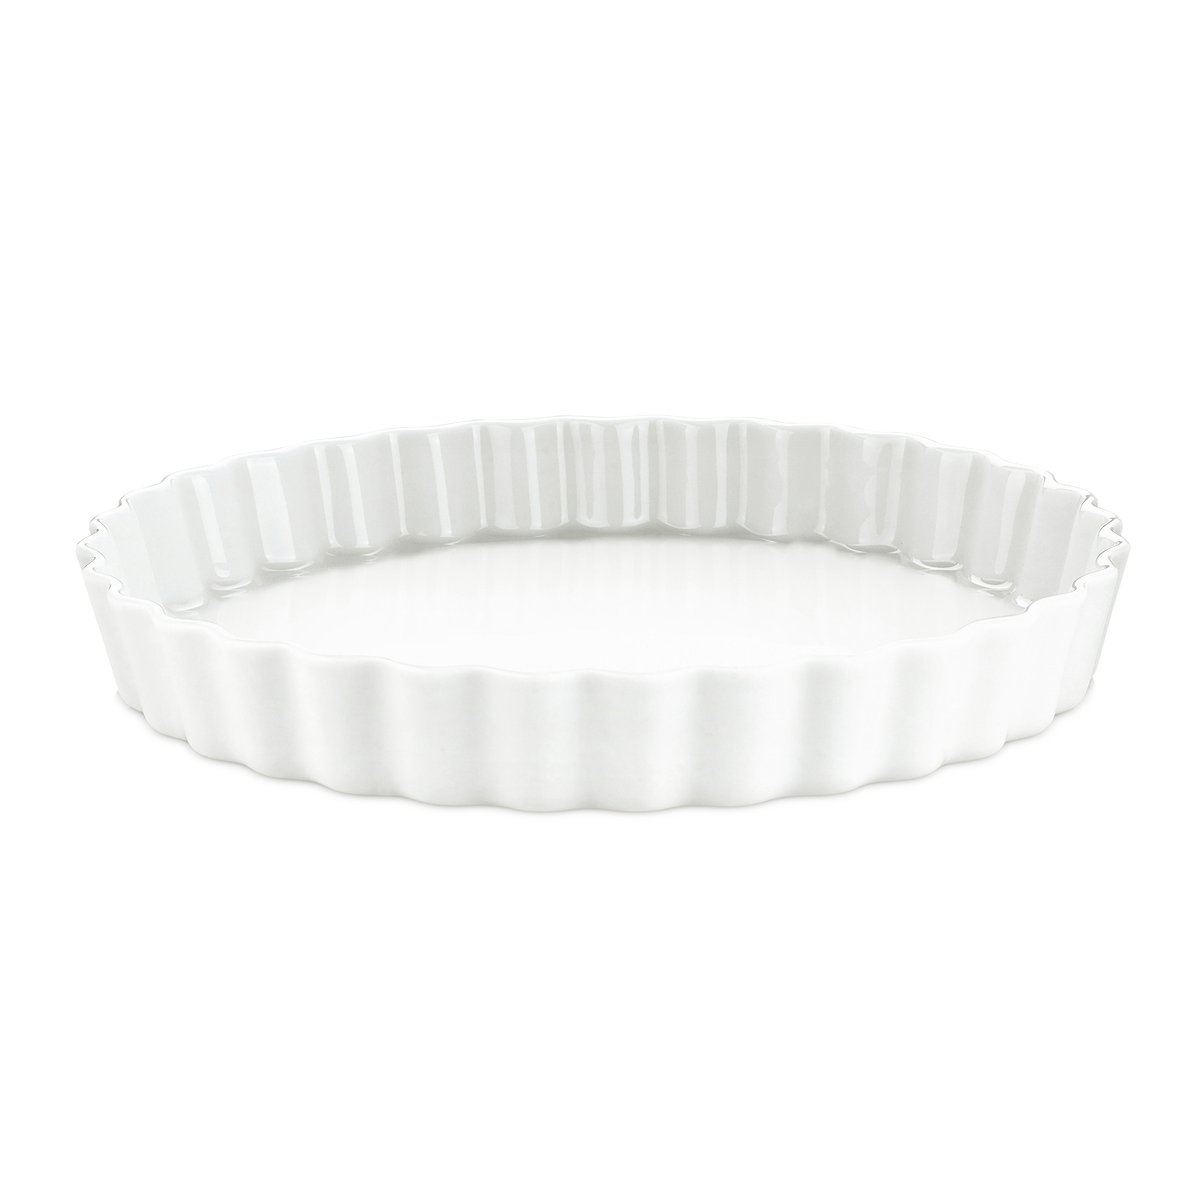 pillivuyt plat à tarte blanc pillivuyt ø : 27,5 cm